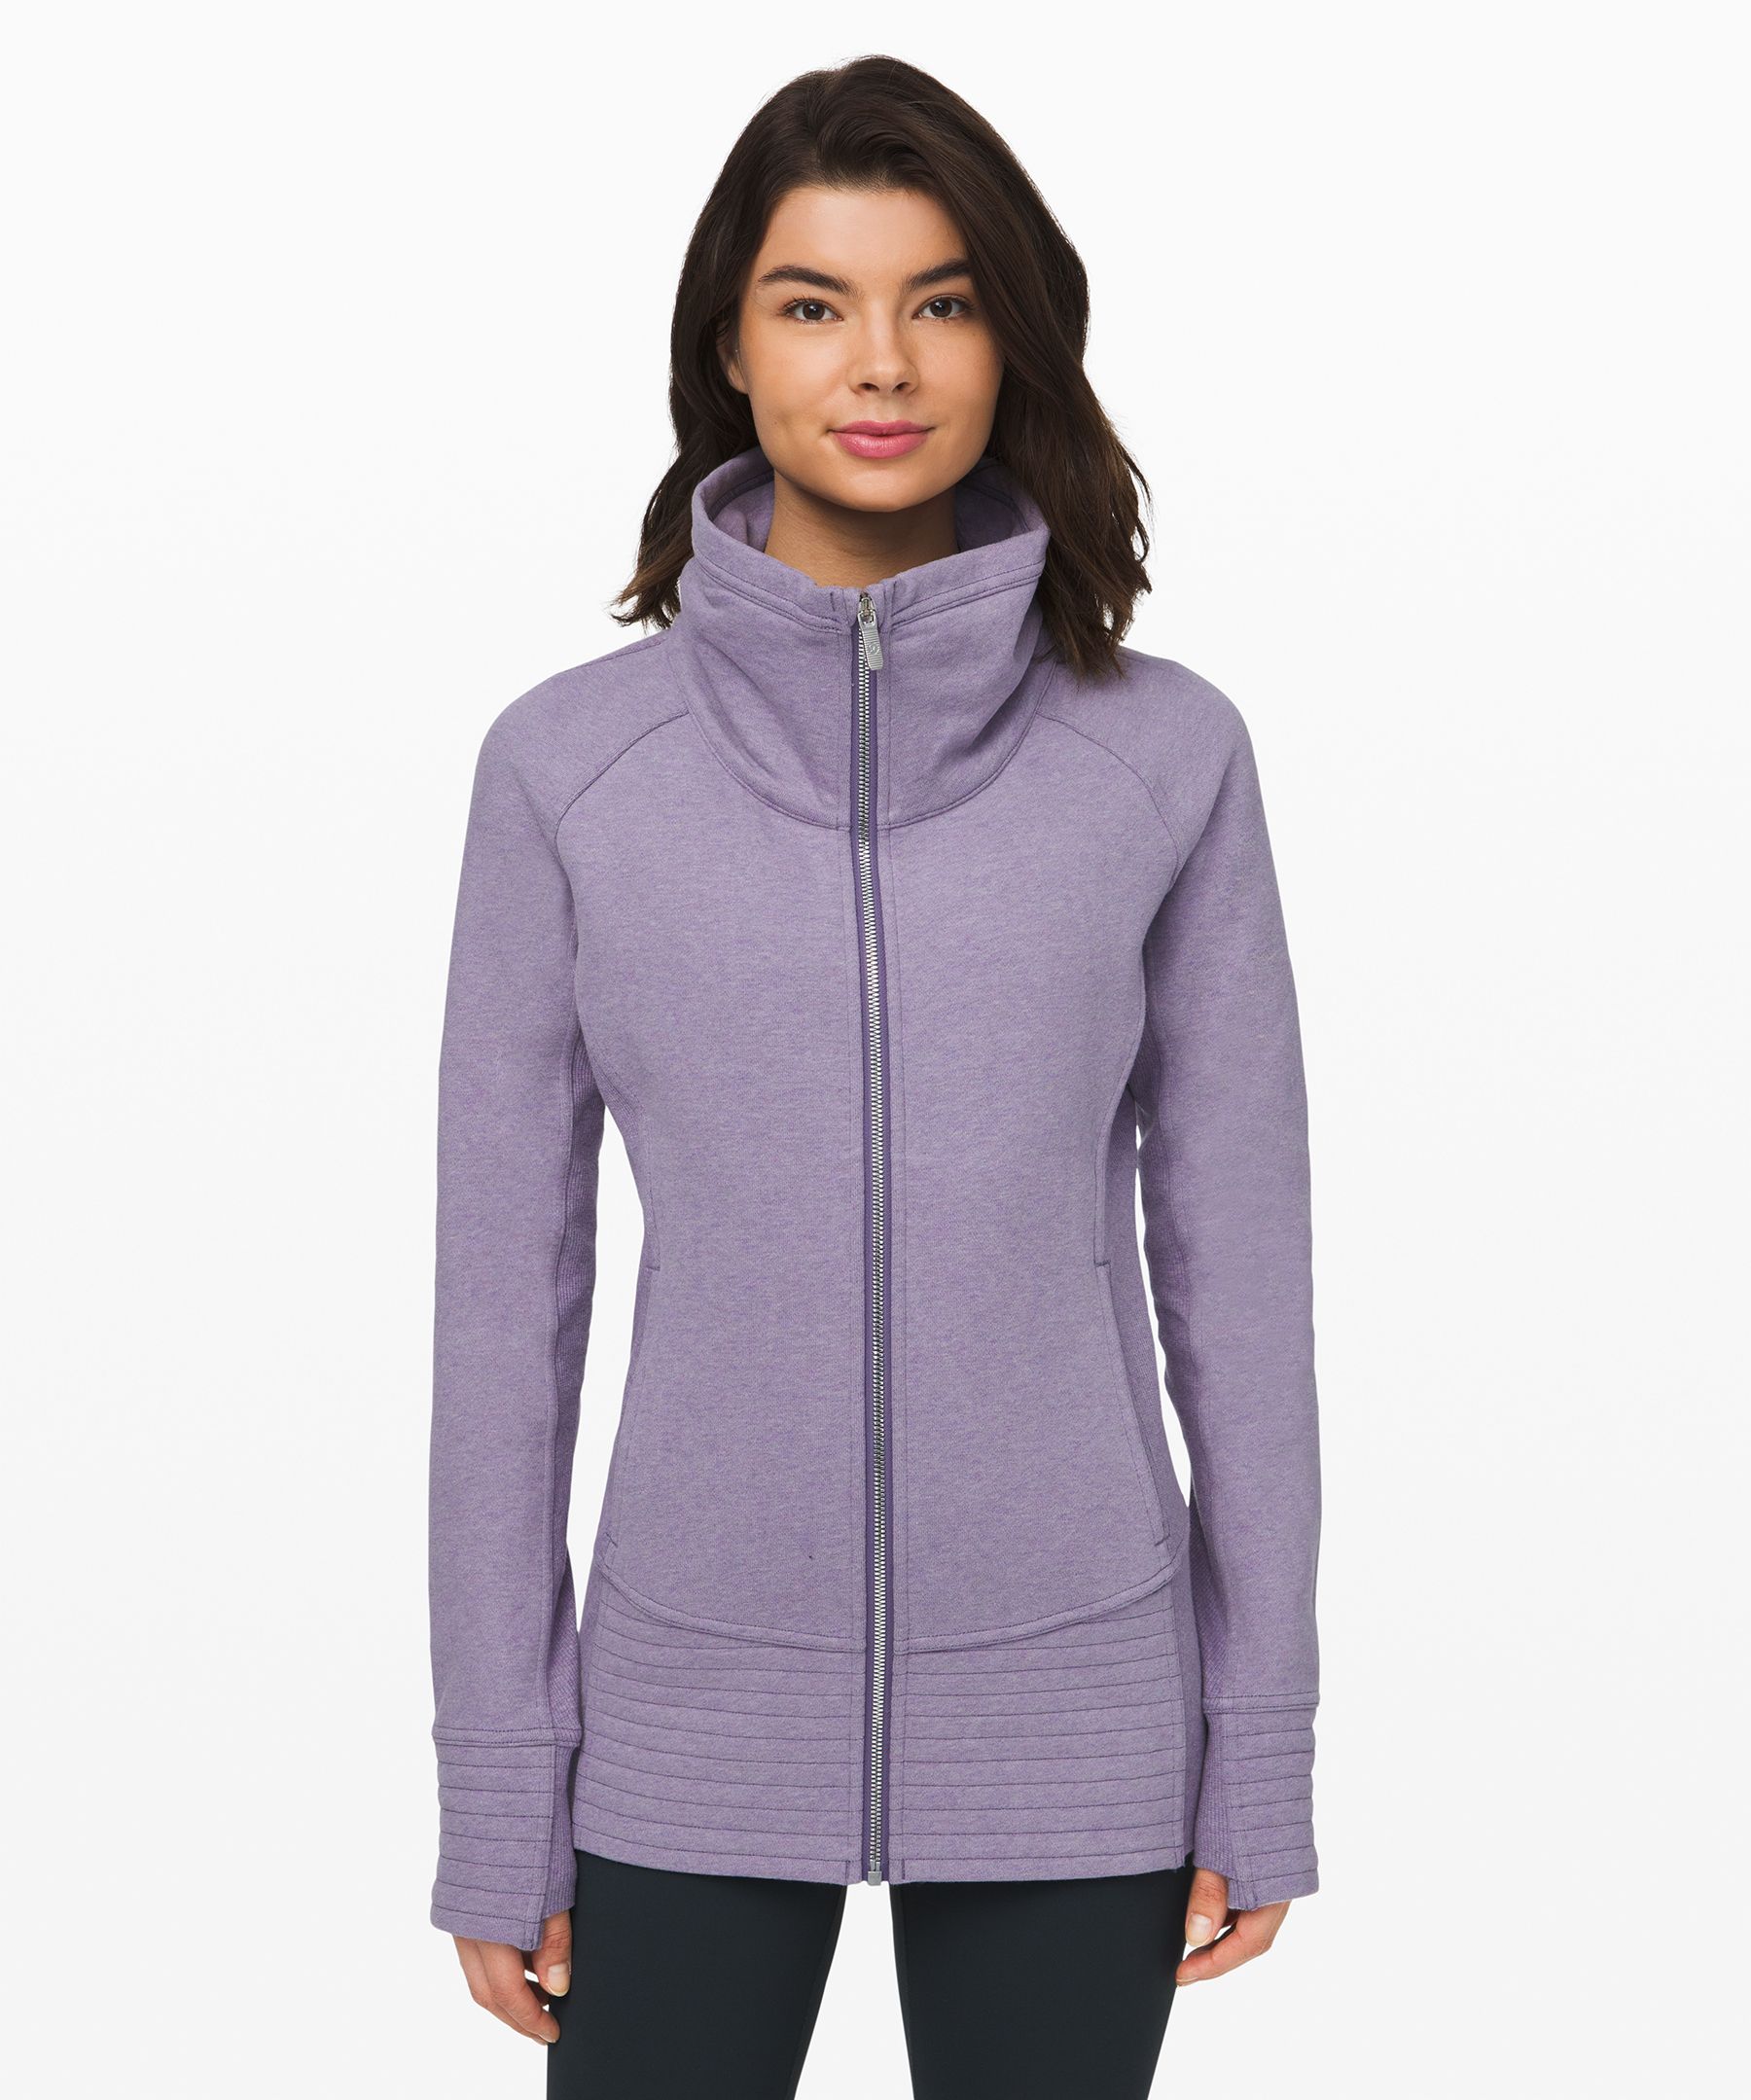 Lululemon Radiant Jacket Ii In Heathered Purple Quartz